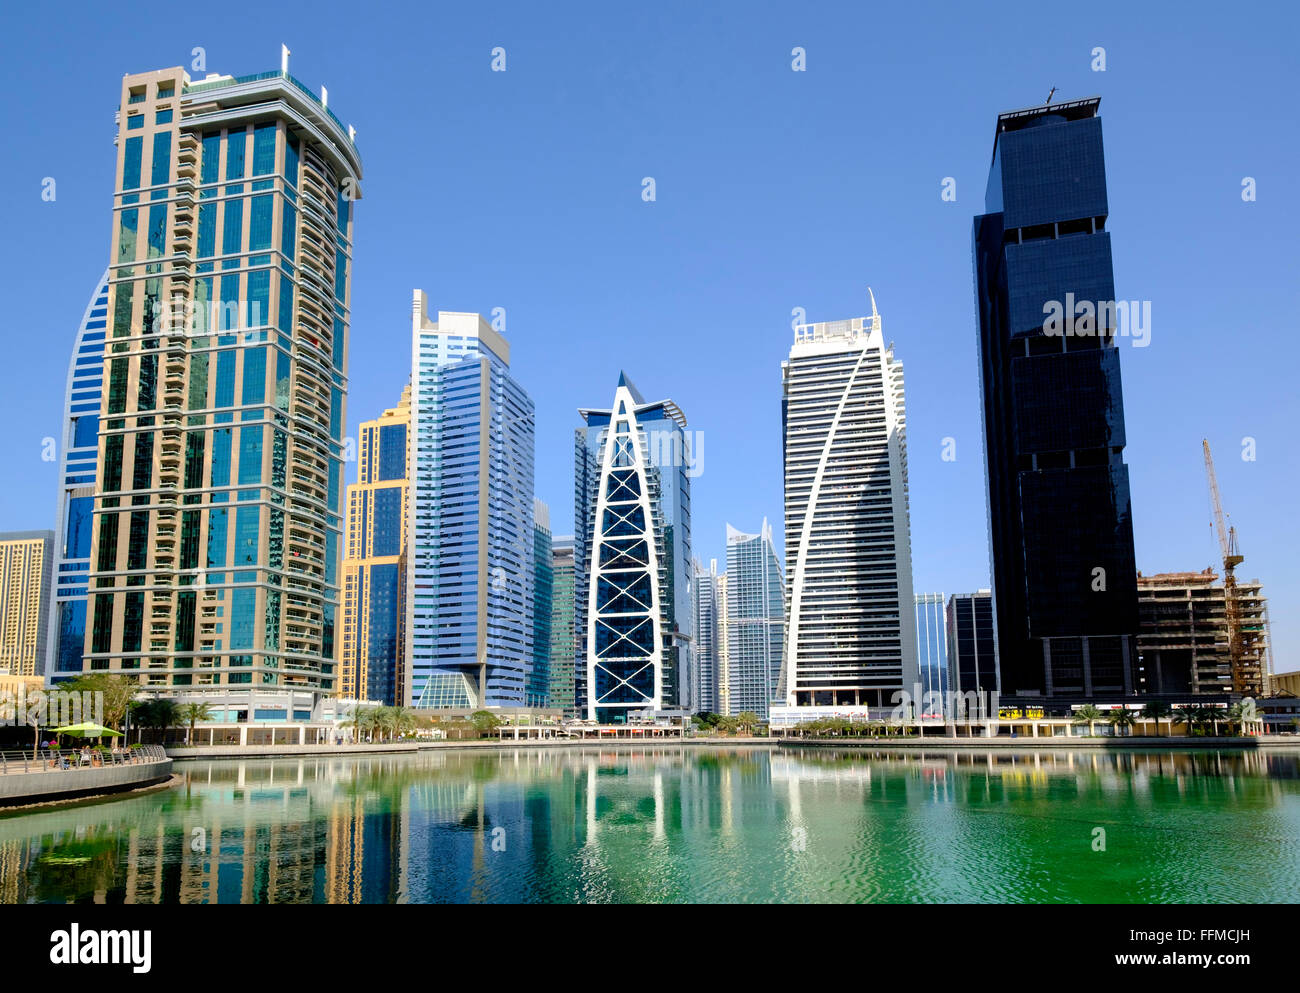 Tagsüber Skyline-Blick auf moderne Büro-Hochhaus und Mehrfamilienhäuser in JLT, Jumeirah Lakes Towers Dubai Vereinigte Arabische Emirate Stockfoto